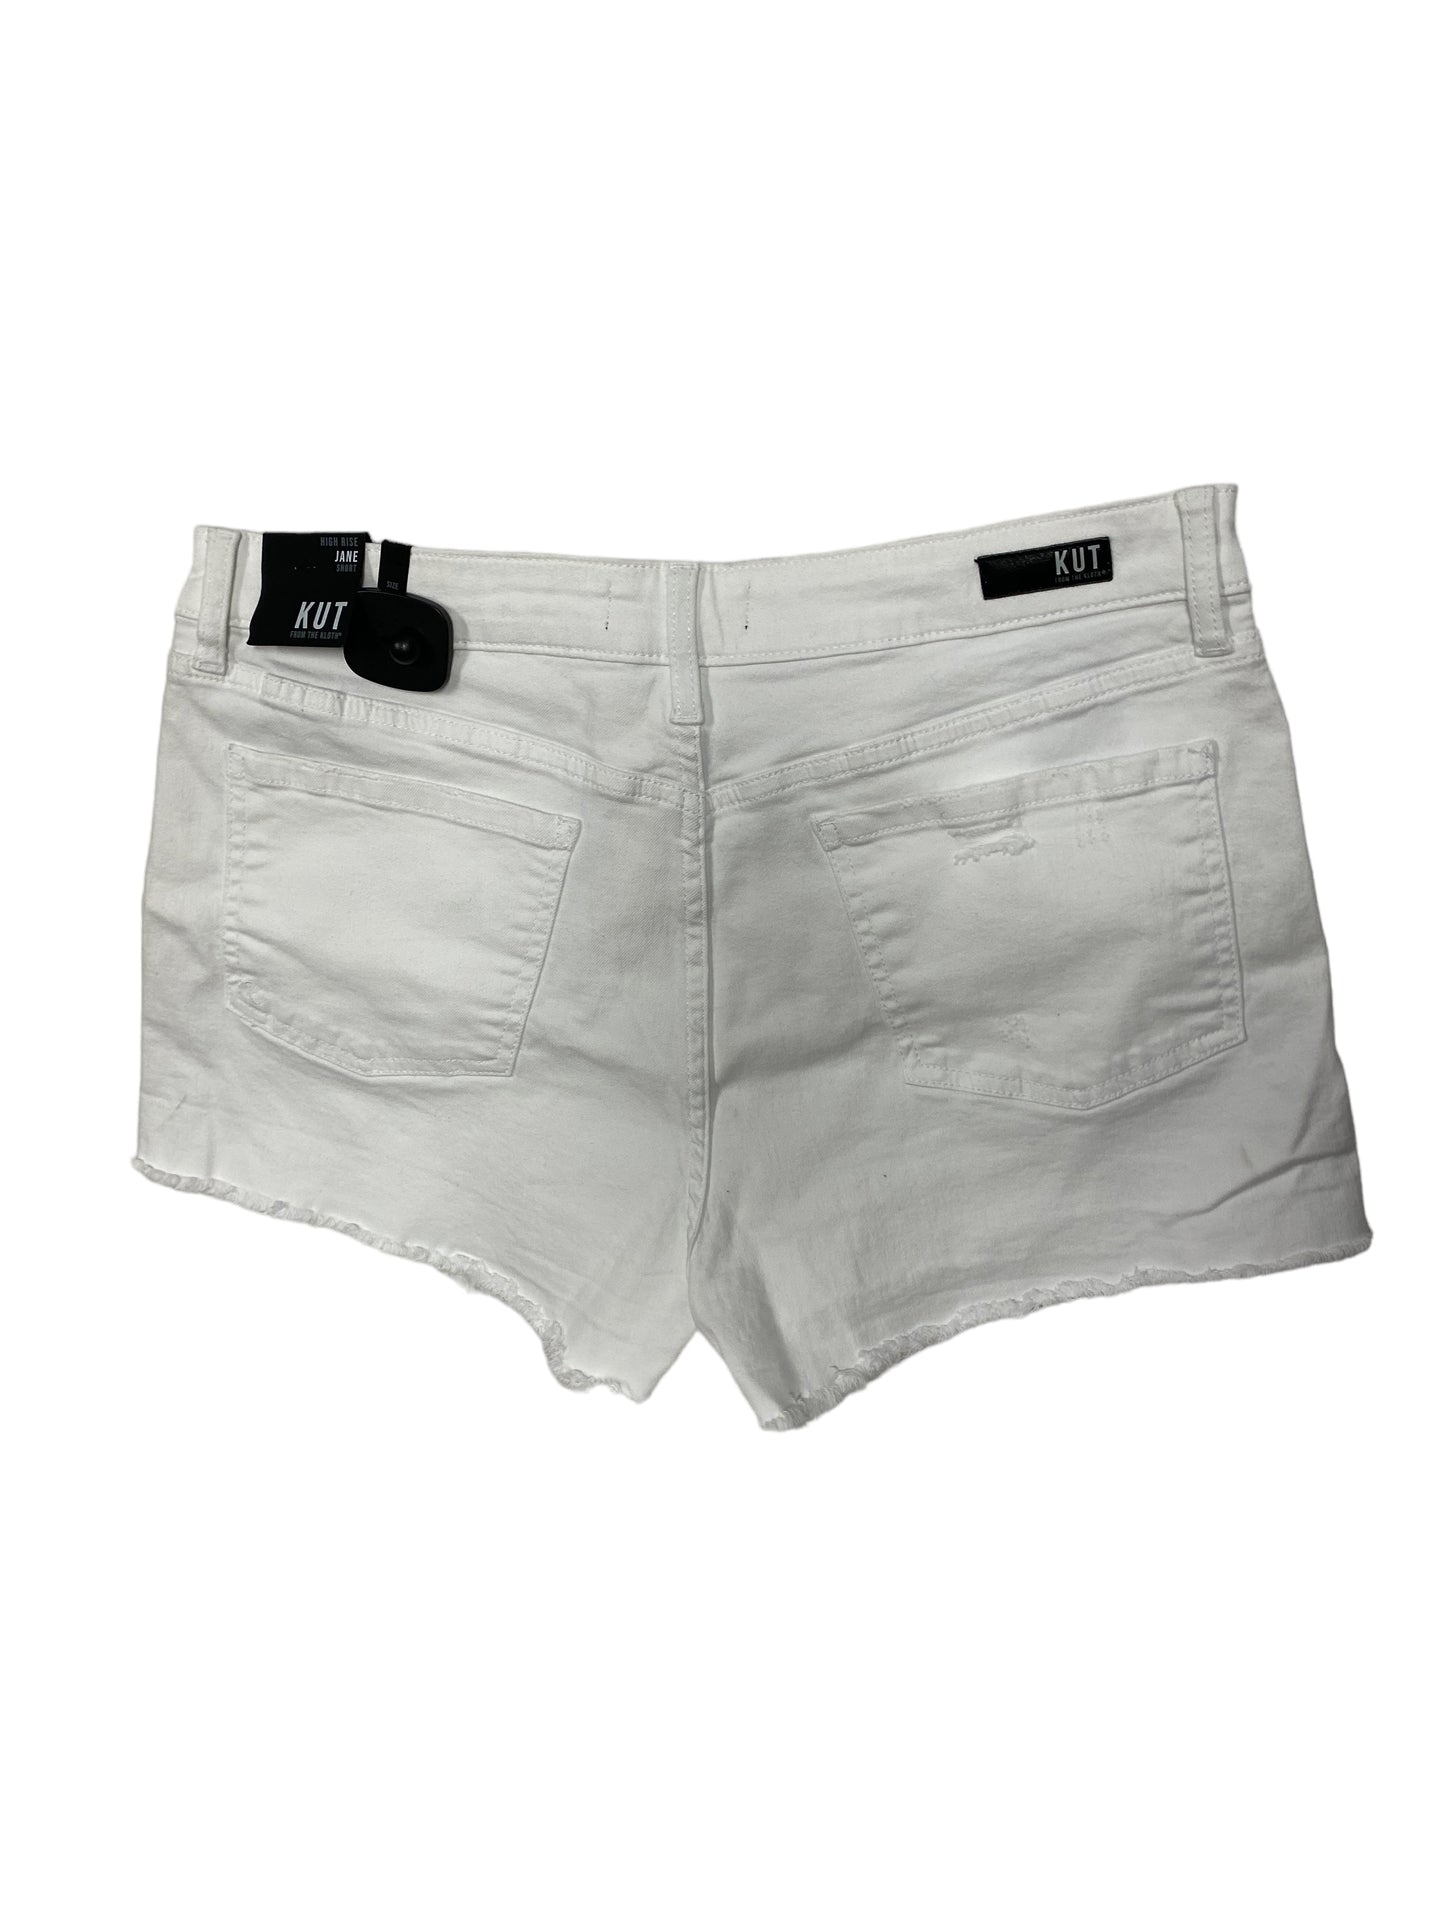 White Shorts Kut, Size 12